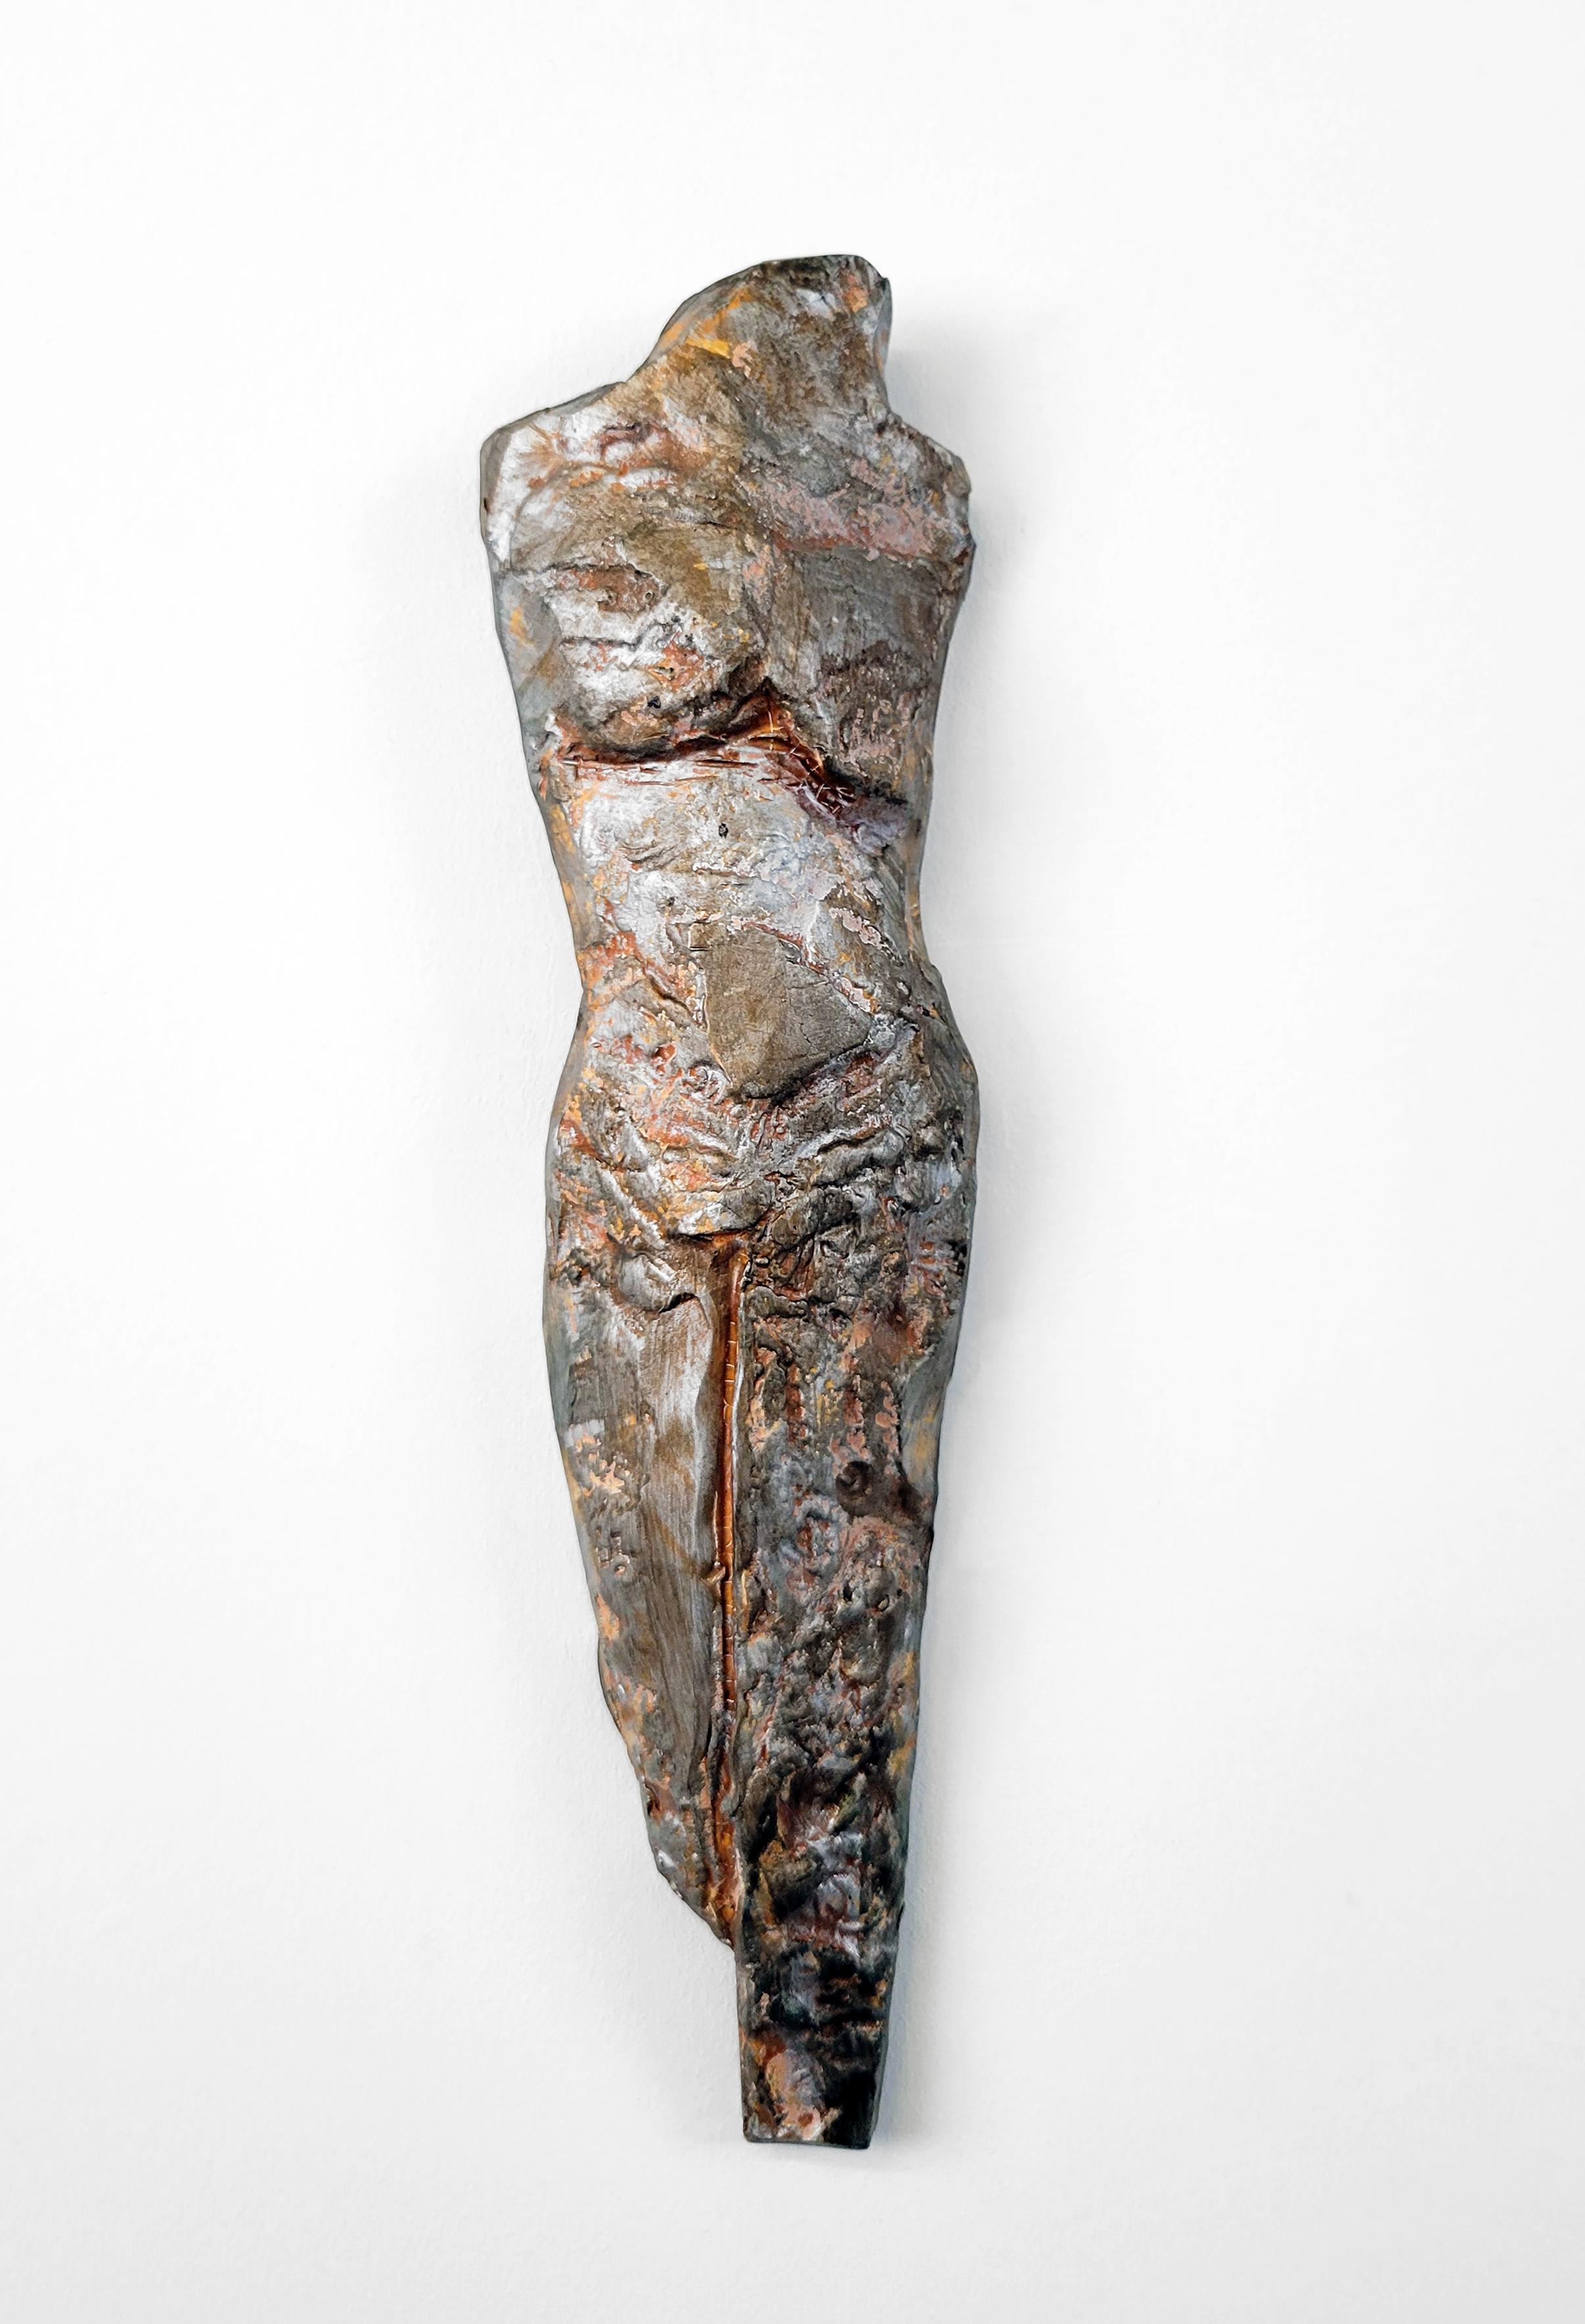 Diese Skulptur aus der Serie "Knights of Protection" von Linda Stein fungiert sowohl als Verteidiger im Kampf als auch als Symbol des Pazifismus.  

Steins Werke befinden sich in mehr als 25 ständigen Sammlungen von Museen, darunter das Crystal